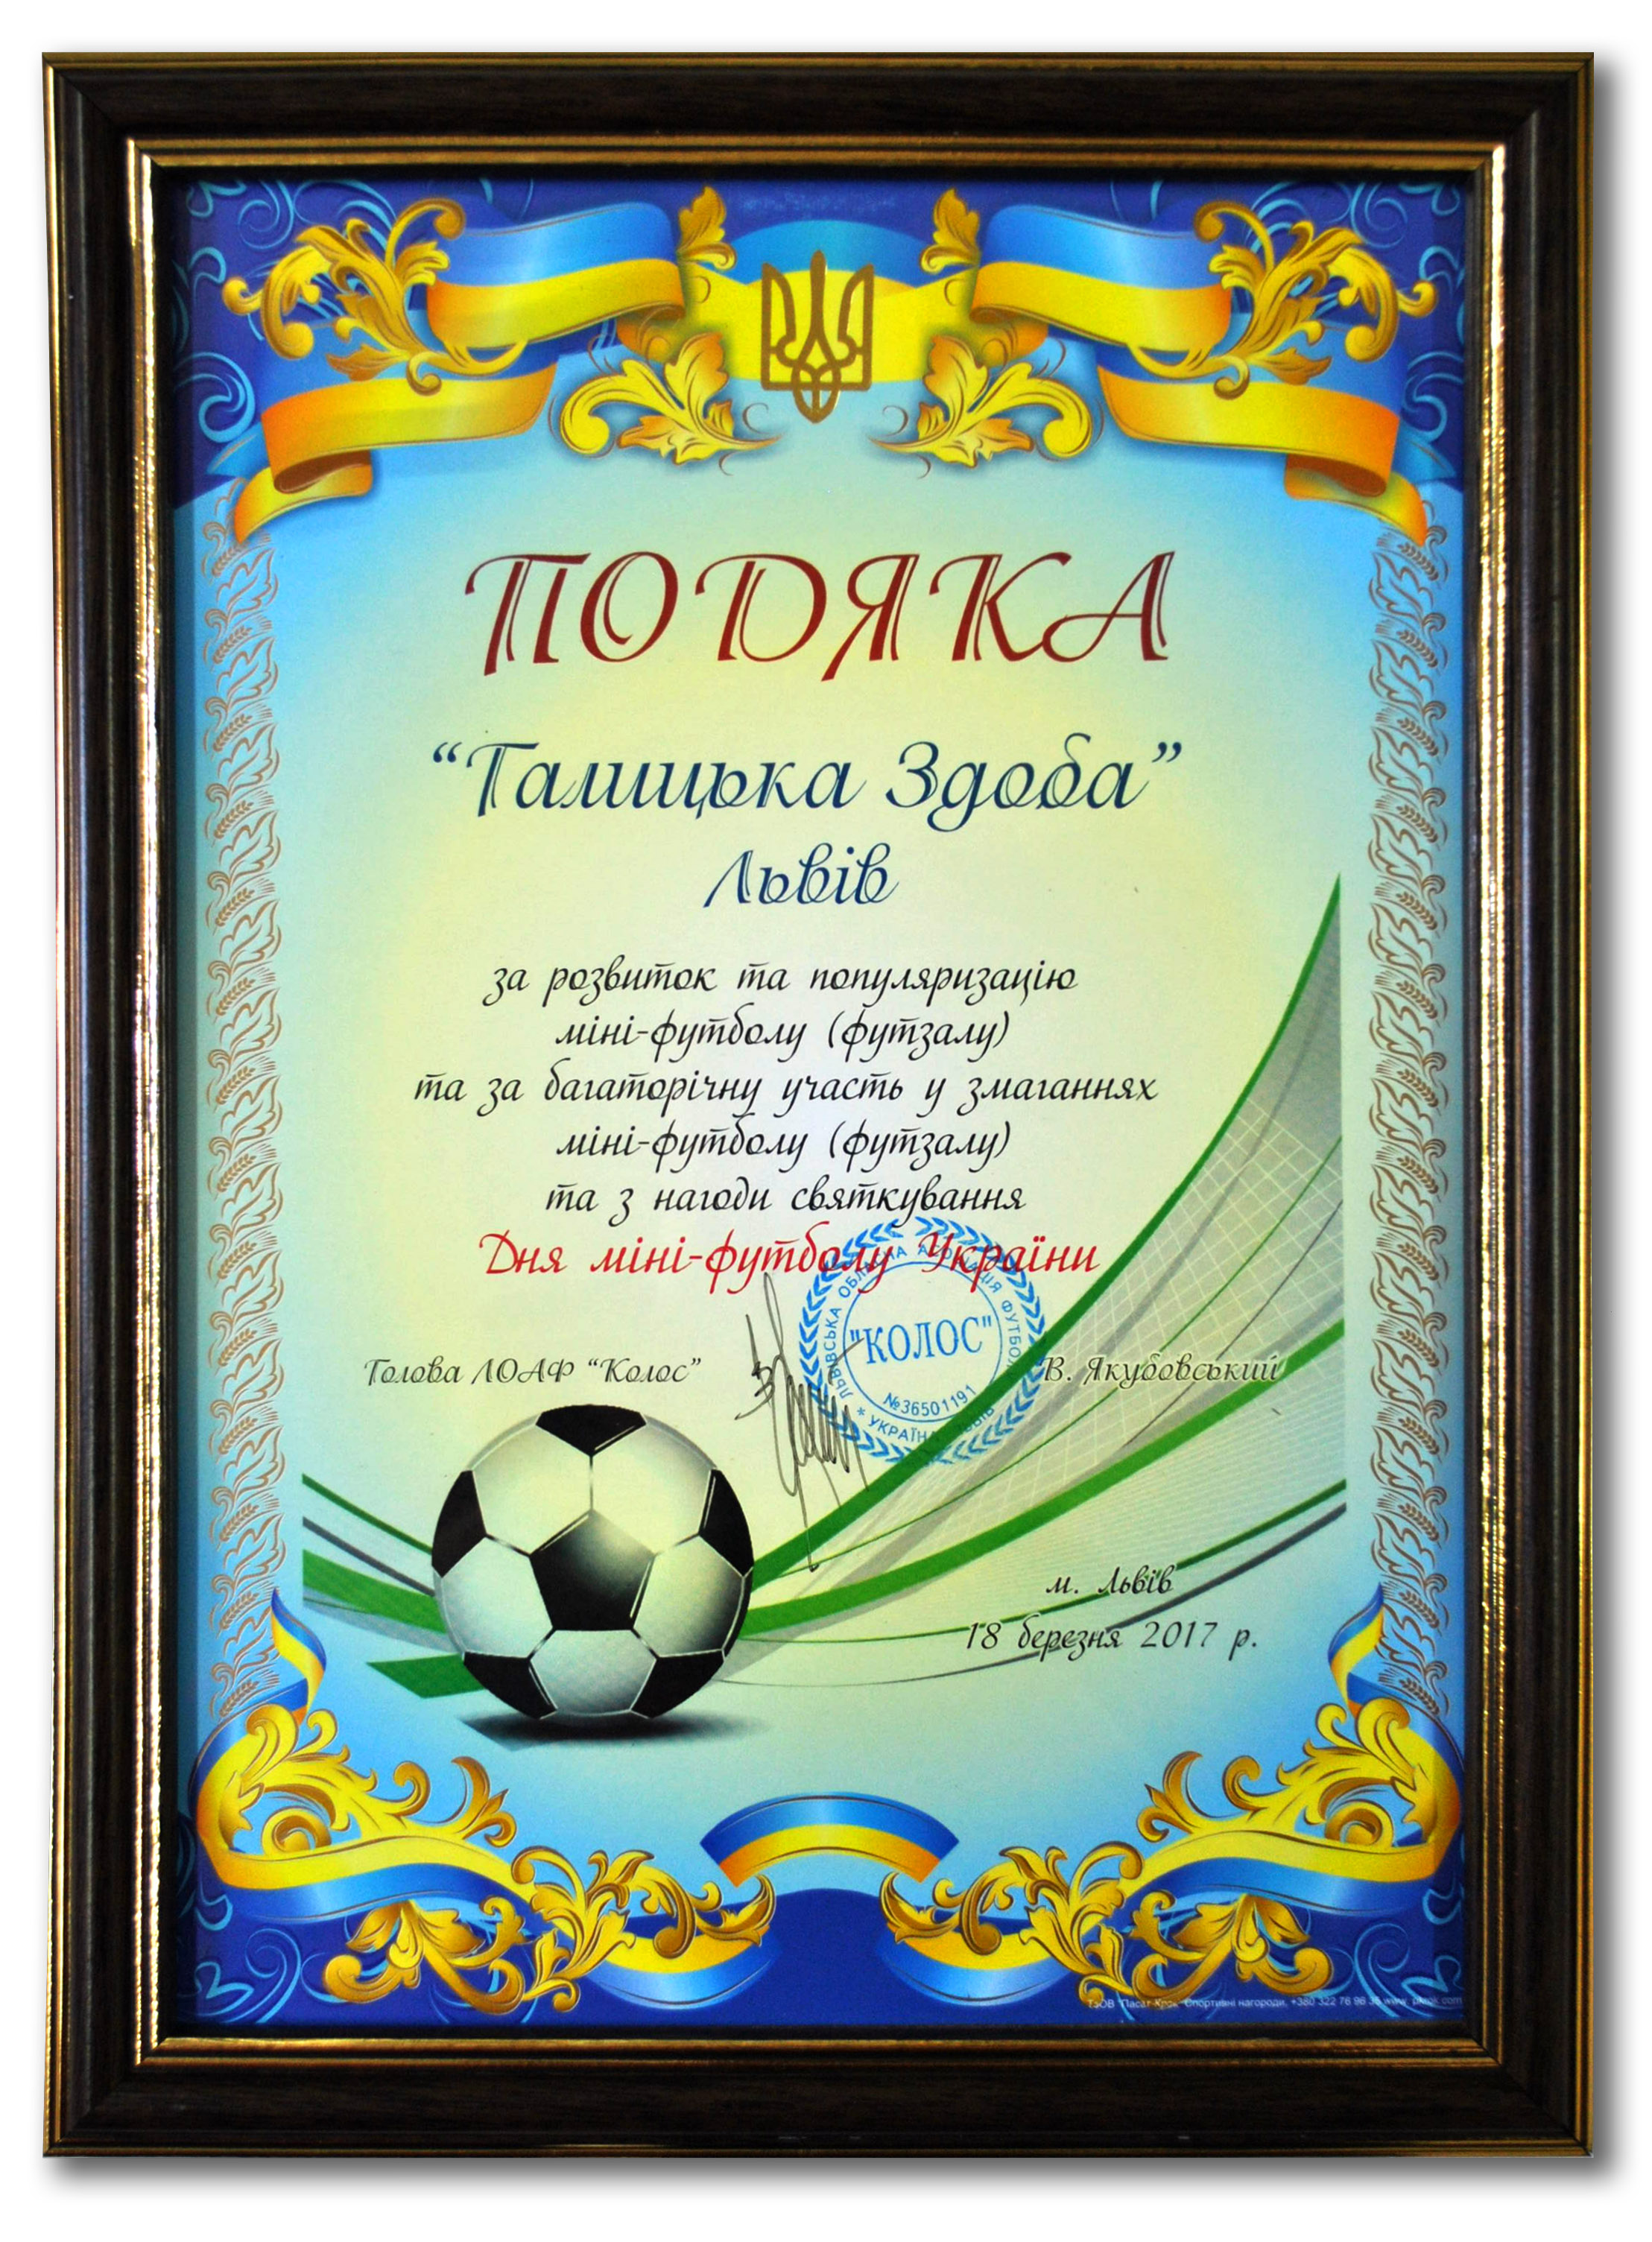 Подяка "Галицькій здобі" за розвиток міні-футболу України